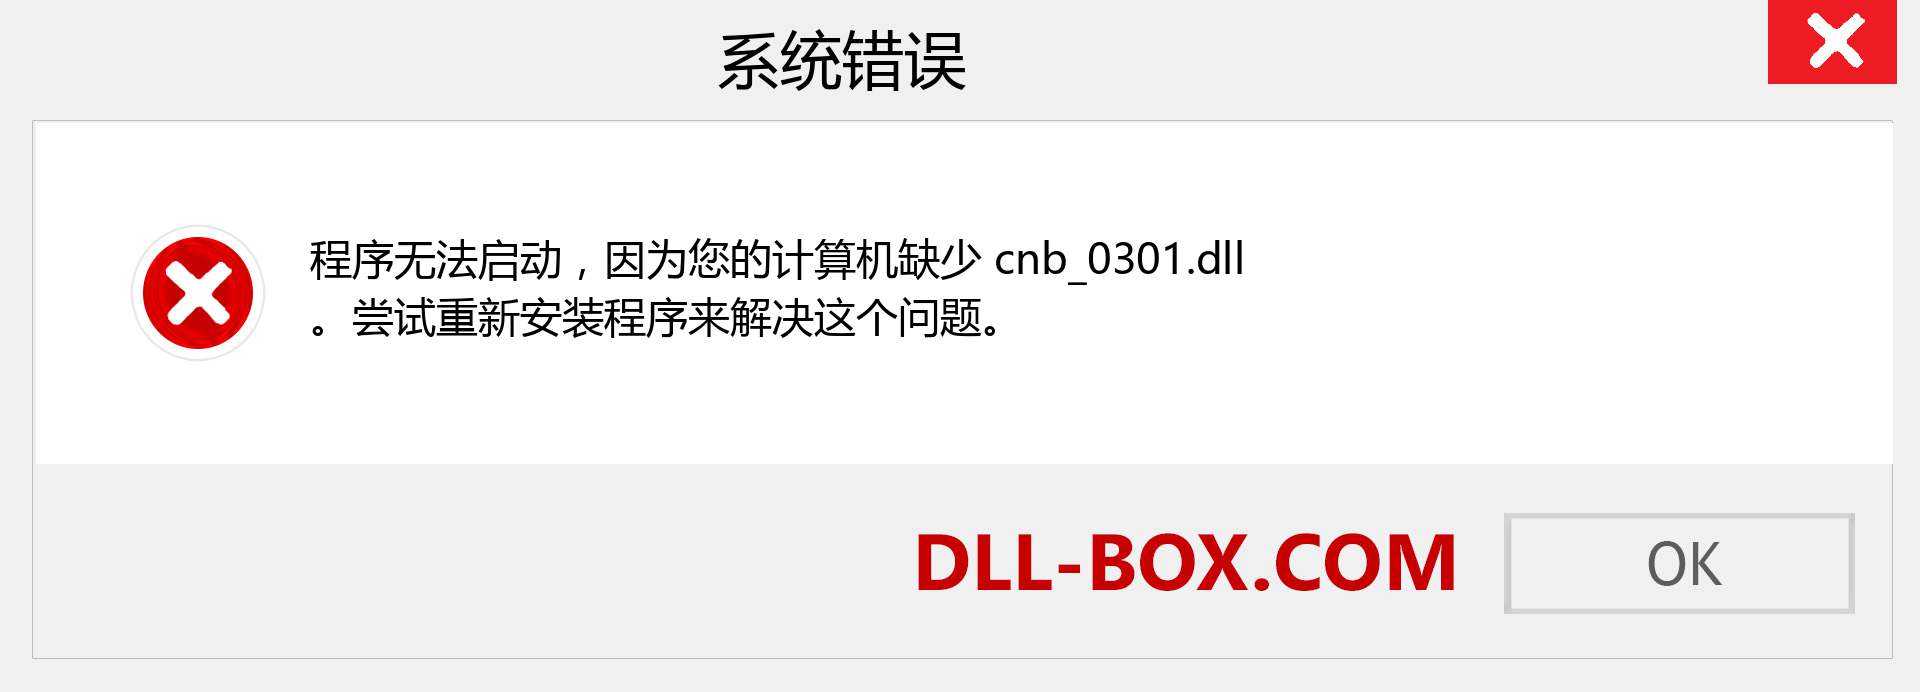 cnb_0301.dll 文件丢失？。 适用于 Windows 7、8、10 的下载 - 修复 Windows、照片、图像上的 cnb_0301 dll 丢失错误